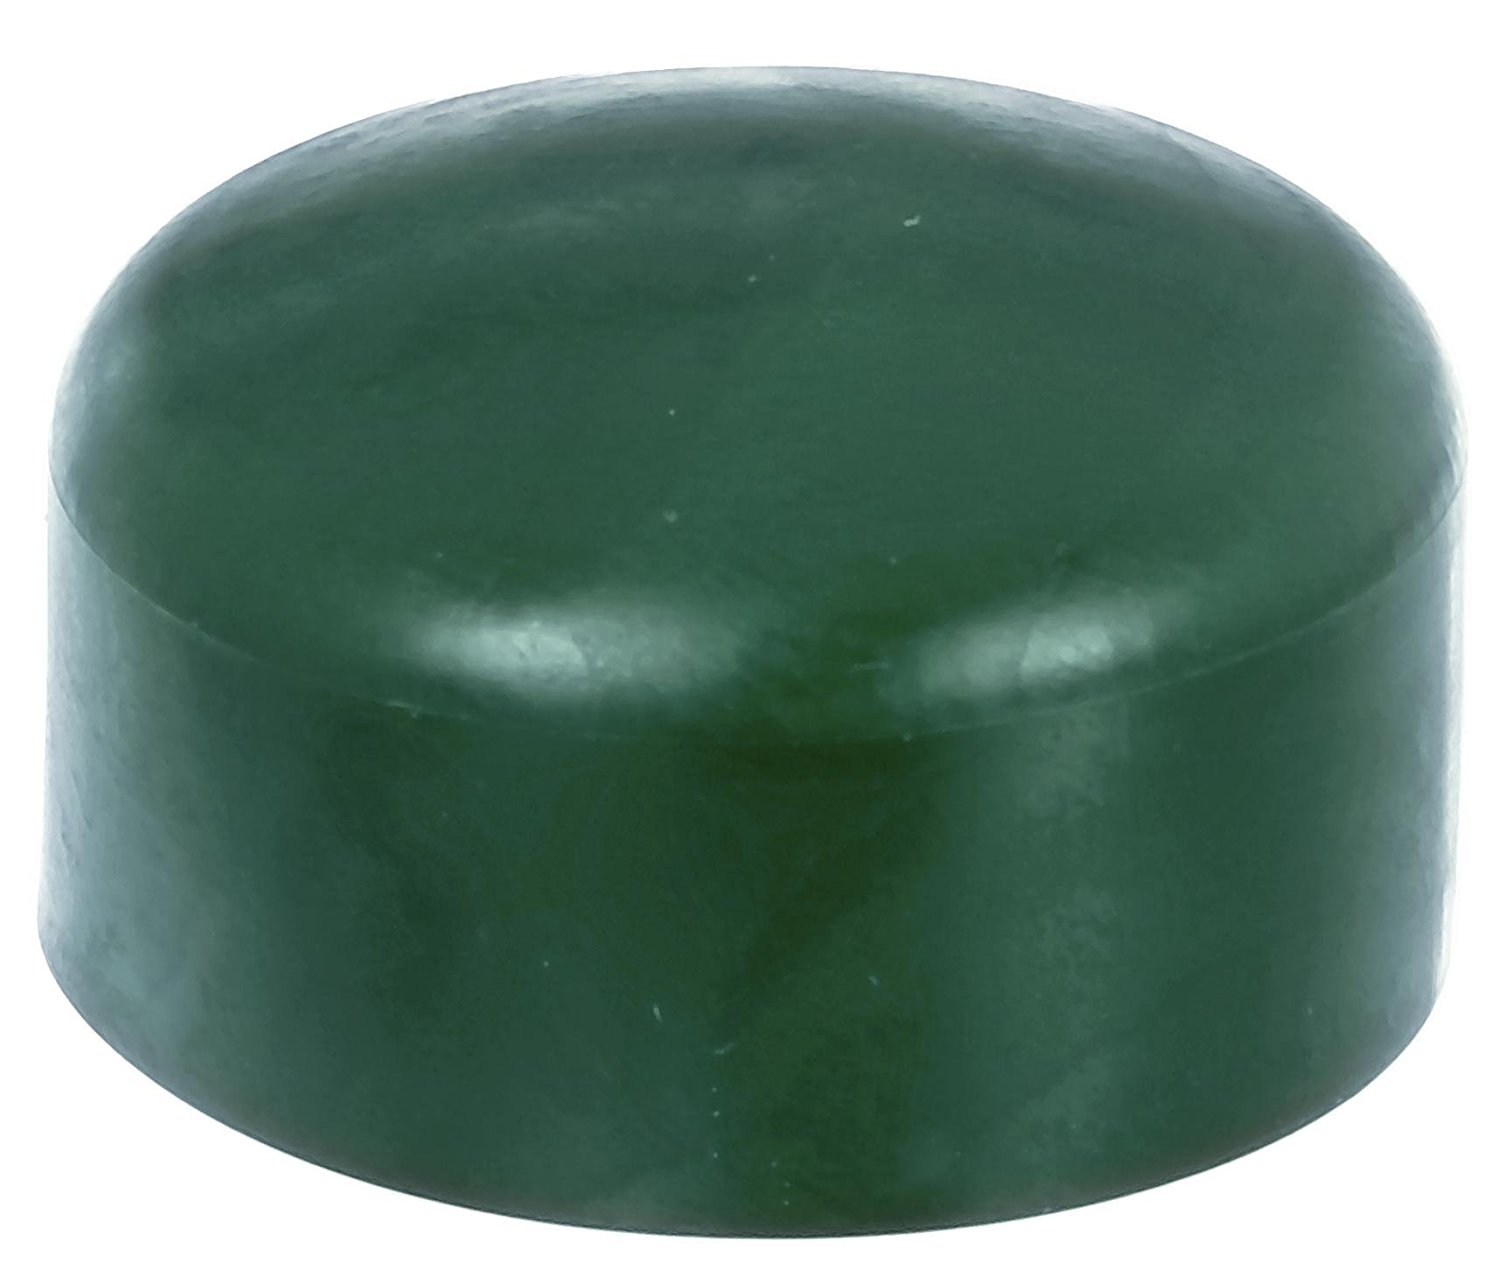 4 x Zaunkappe grün 34-35 mm, Pfostenkappe für runde Metallpfosten, grün, Rohrkappen, Abdeckkappe für